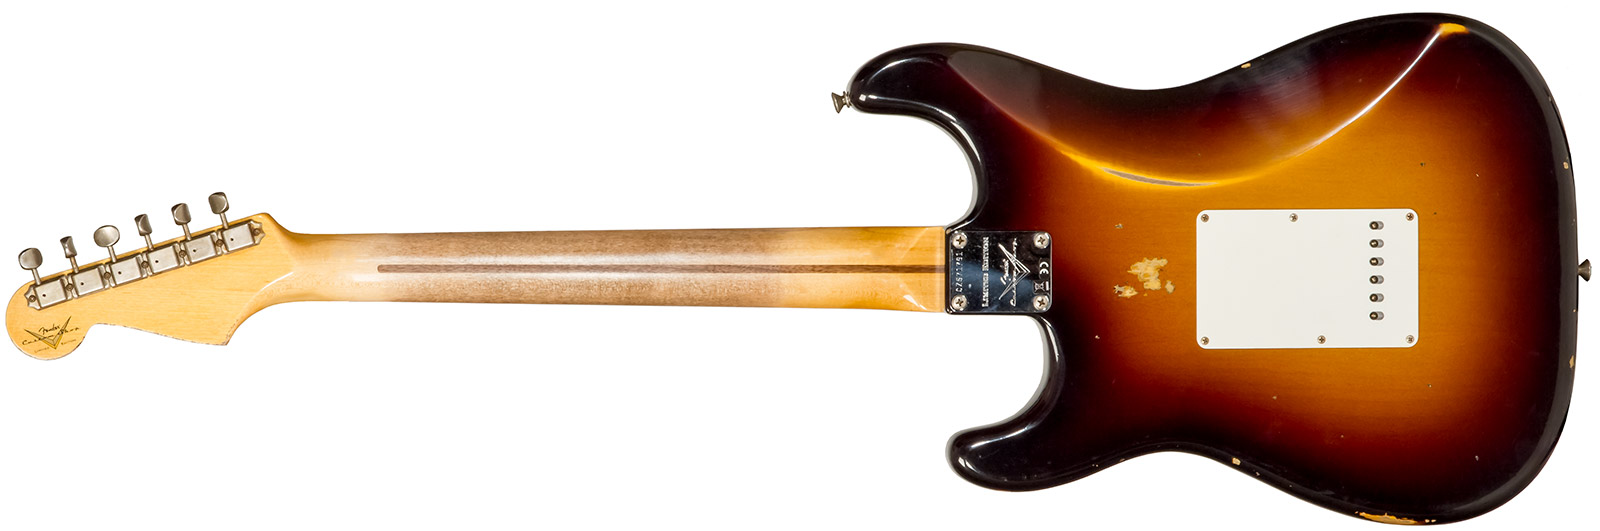 Fender Custom Shop Strat 1957 3s Trem Mn #cz571791 - Relic Wide Fade 2-color Sunburst - E-Gitarre in Str-Form - Variation 1